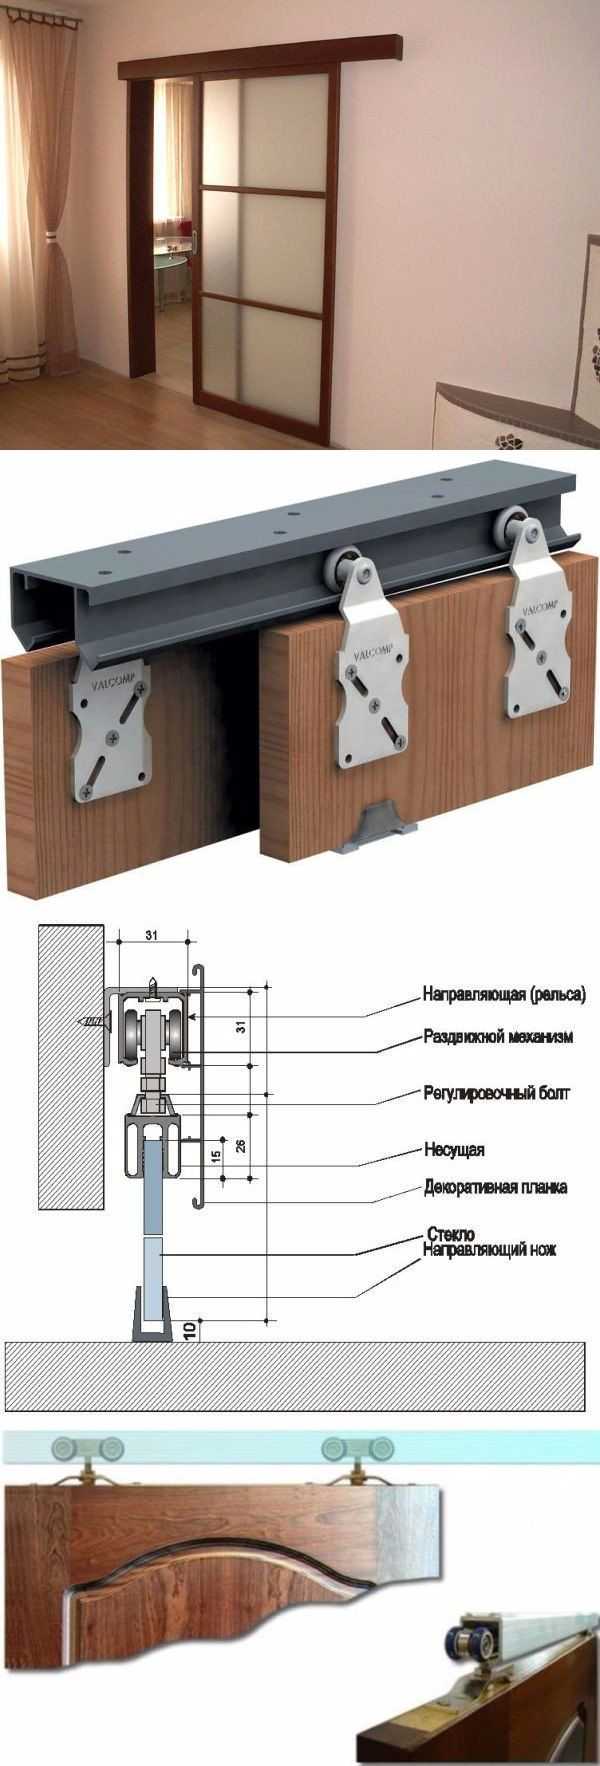 Как сделать сдвижные межкомнатные двери своими руками? механизм поворотно-раздвижной конструкции в квартире